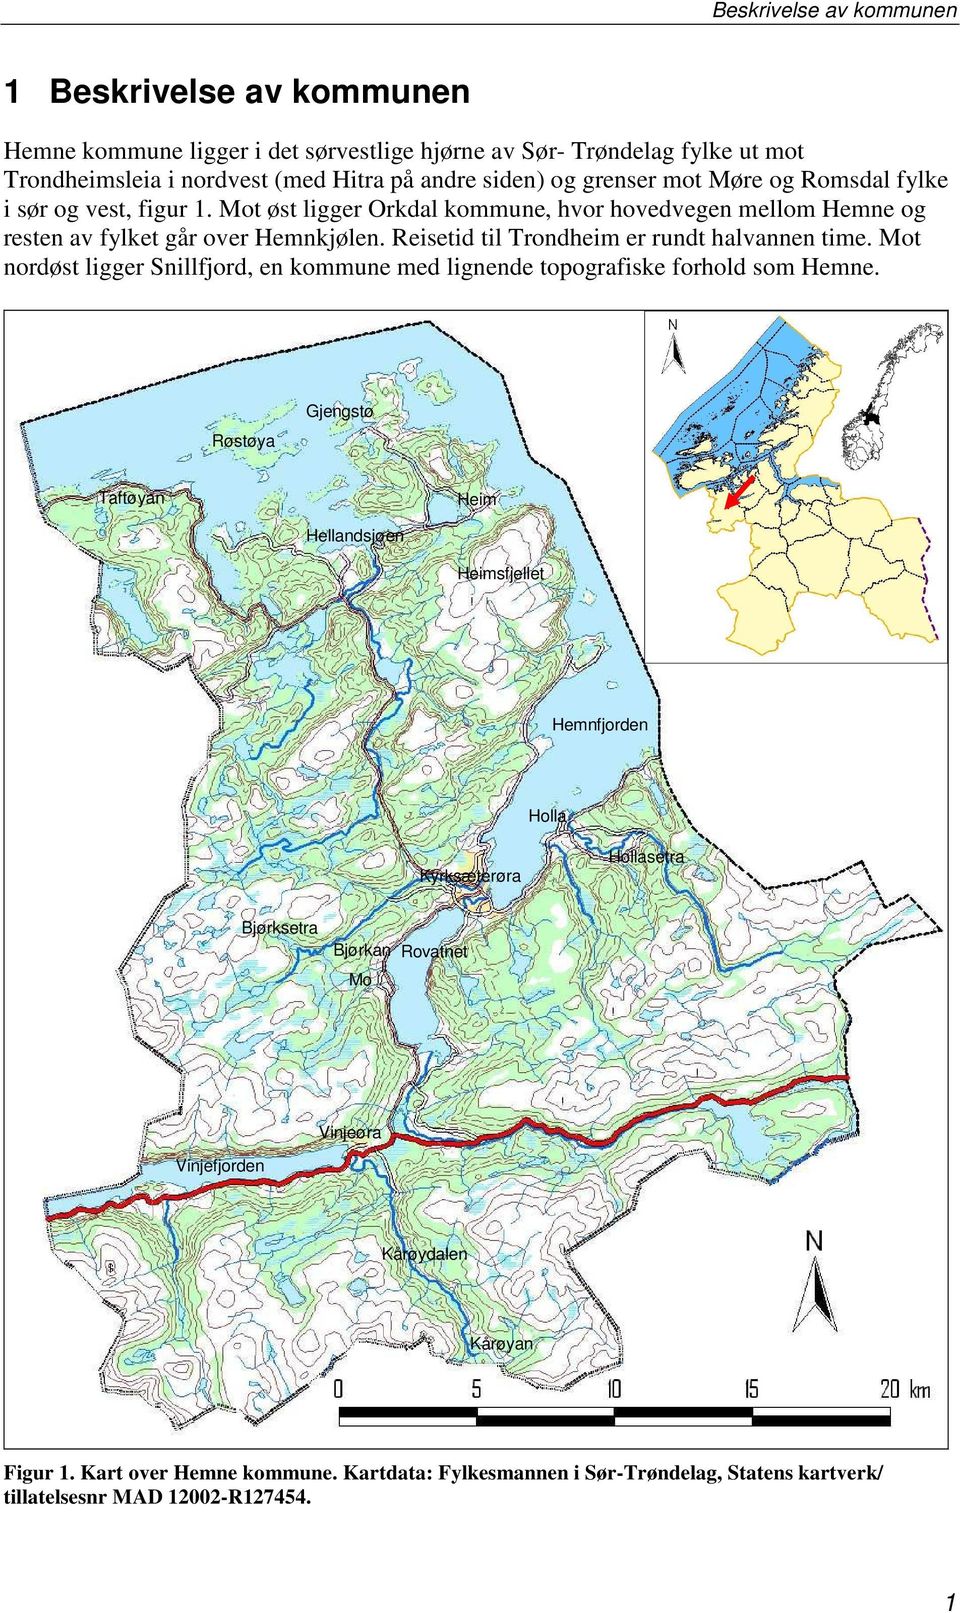 Reisetid til Trondheim er rundt halvannen time. Mot nordøst ligger Snillfjord, en kommune med lignende topografiske forhold som Hemne.